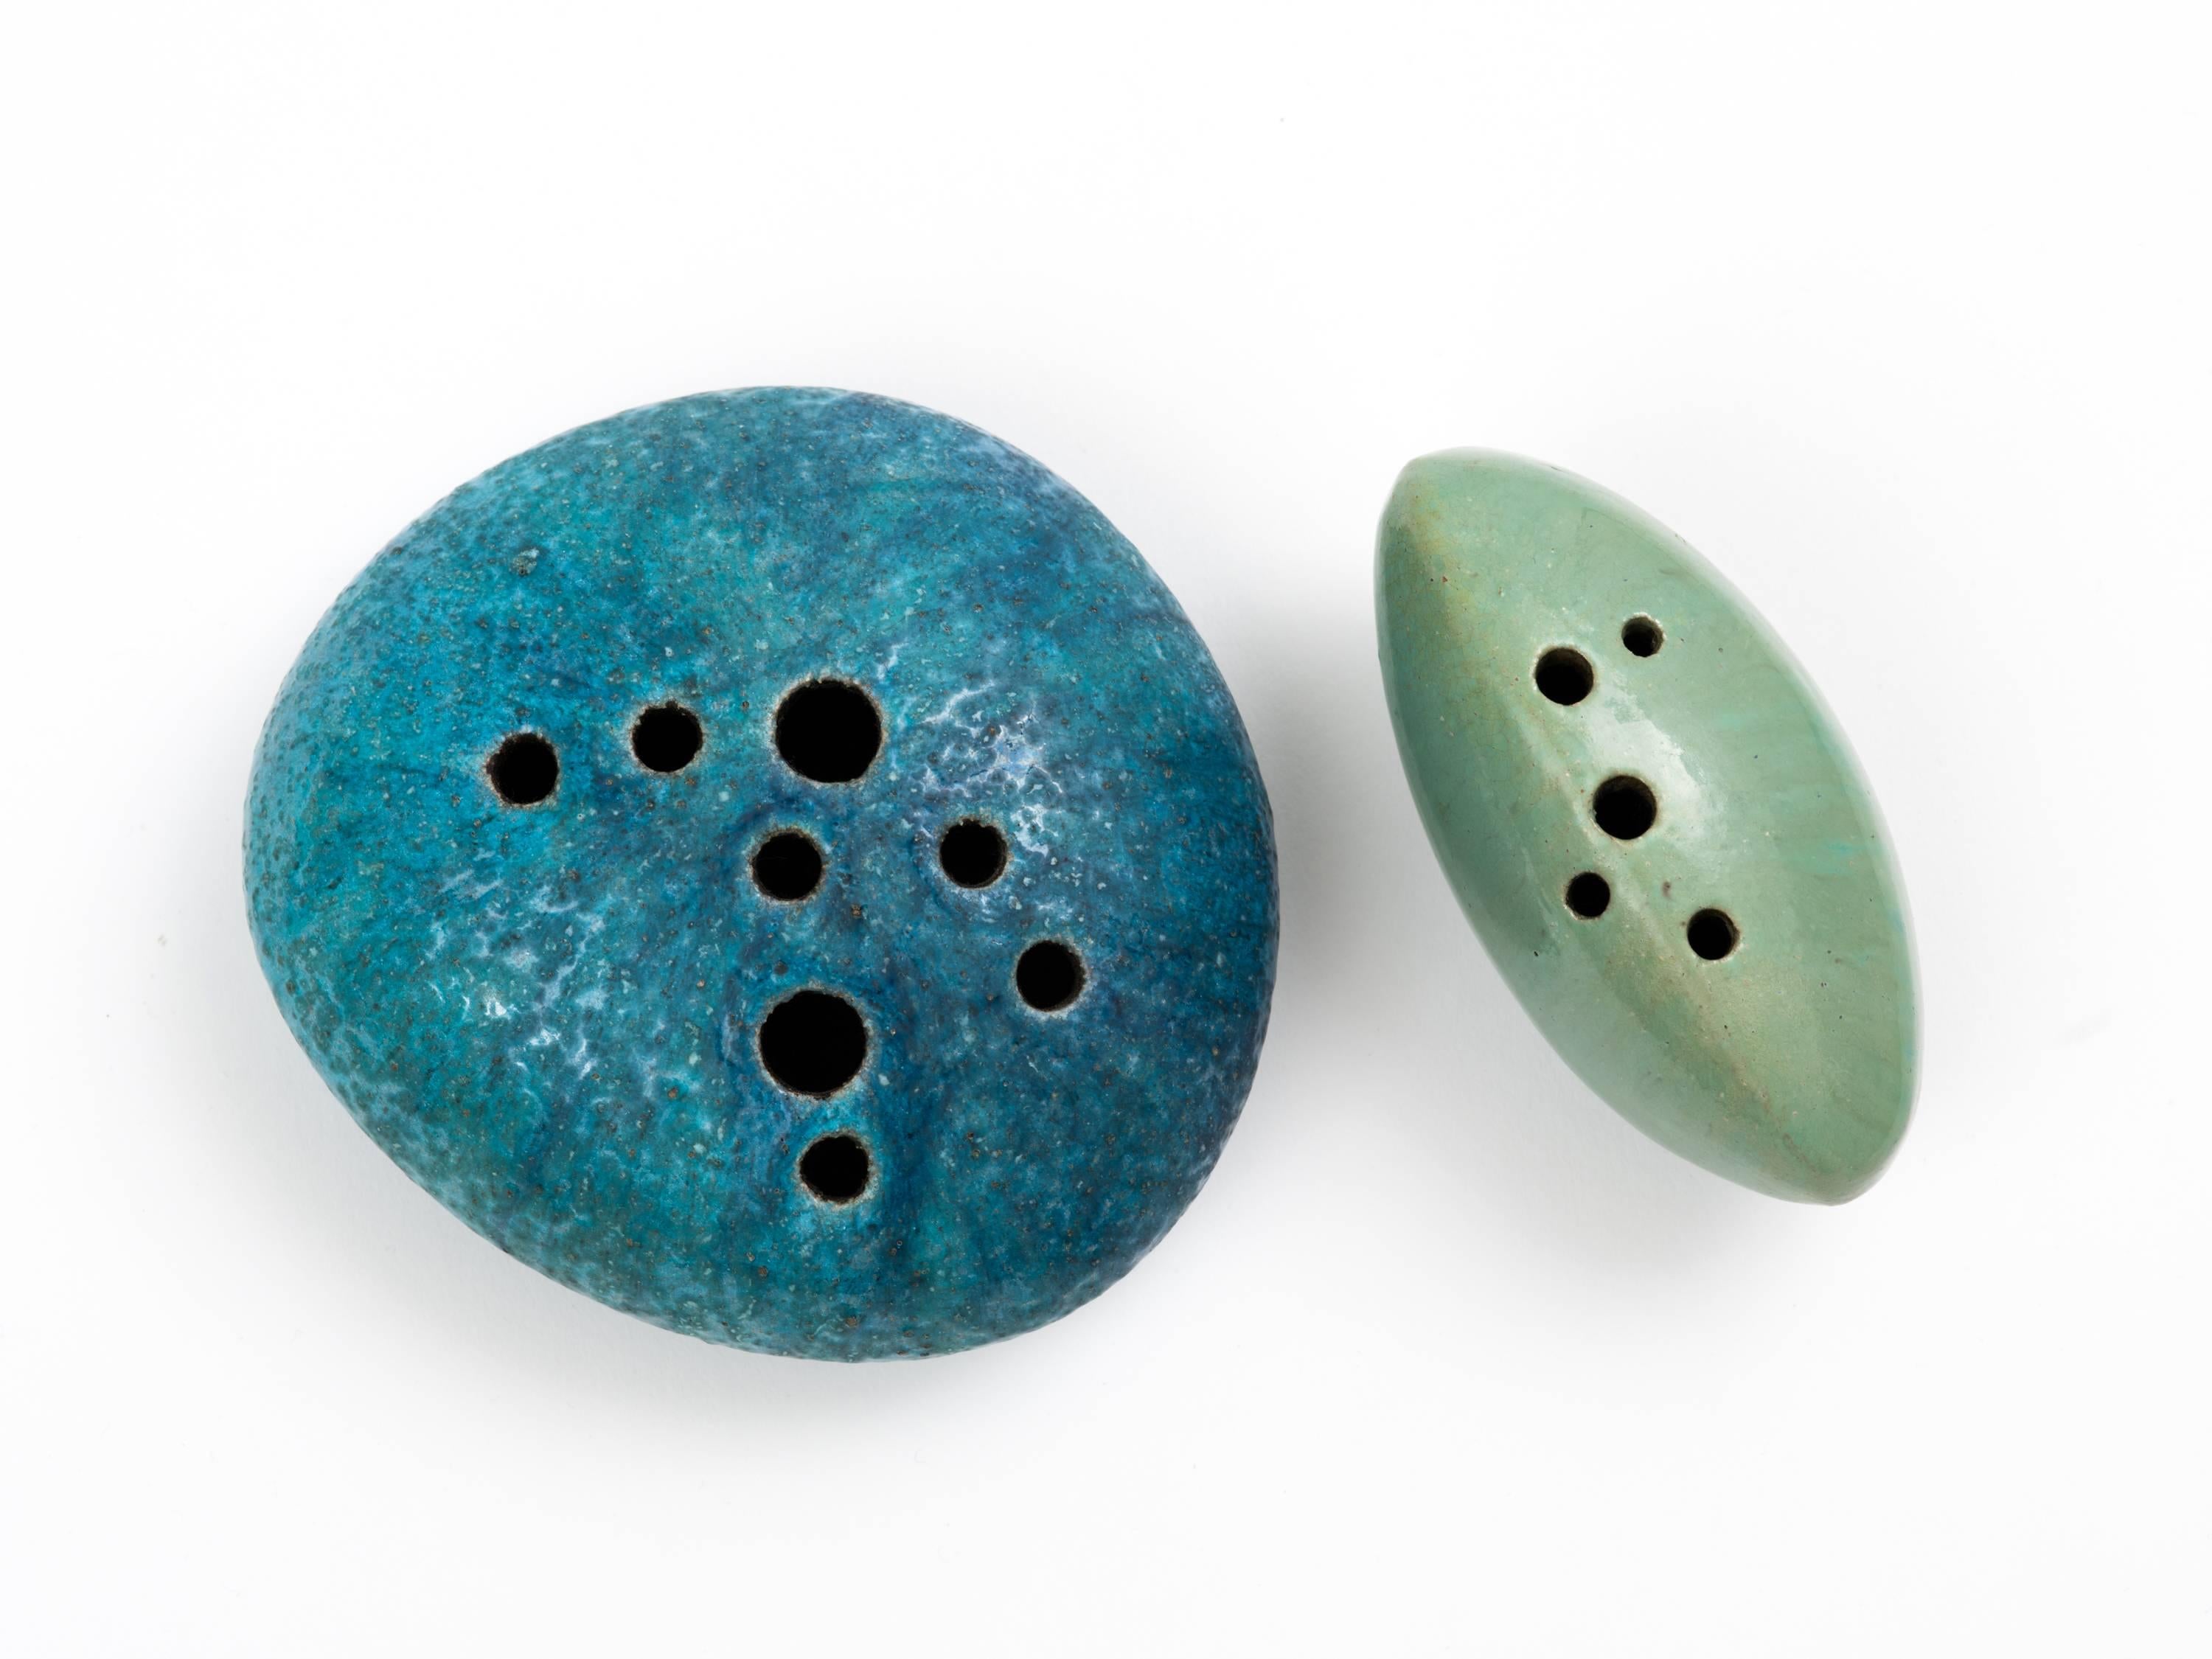 Ein Paar glasierte Steinskulpturen (Sassi) aus Steingut in mediterranen Blautönen und Meerschaumgrün von Renato Bassoli (1915-1982). Bassoli war ein multidisziplinärer Künstler, der in seiner früheren Laufbahn sowohl im Grafik- als auch im